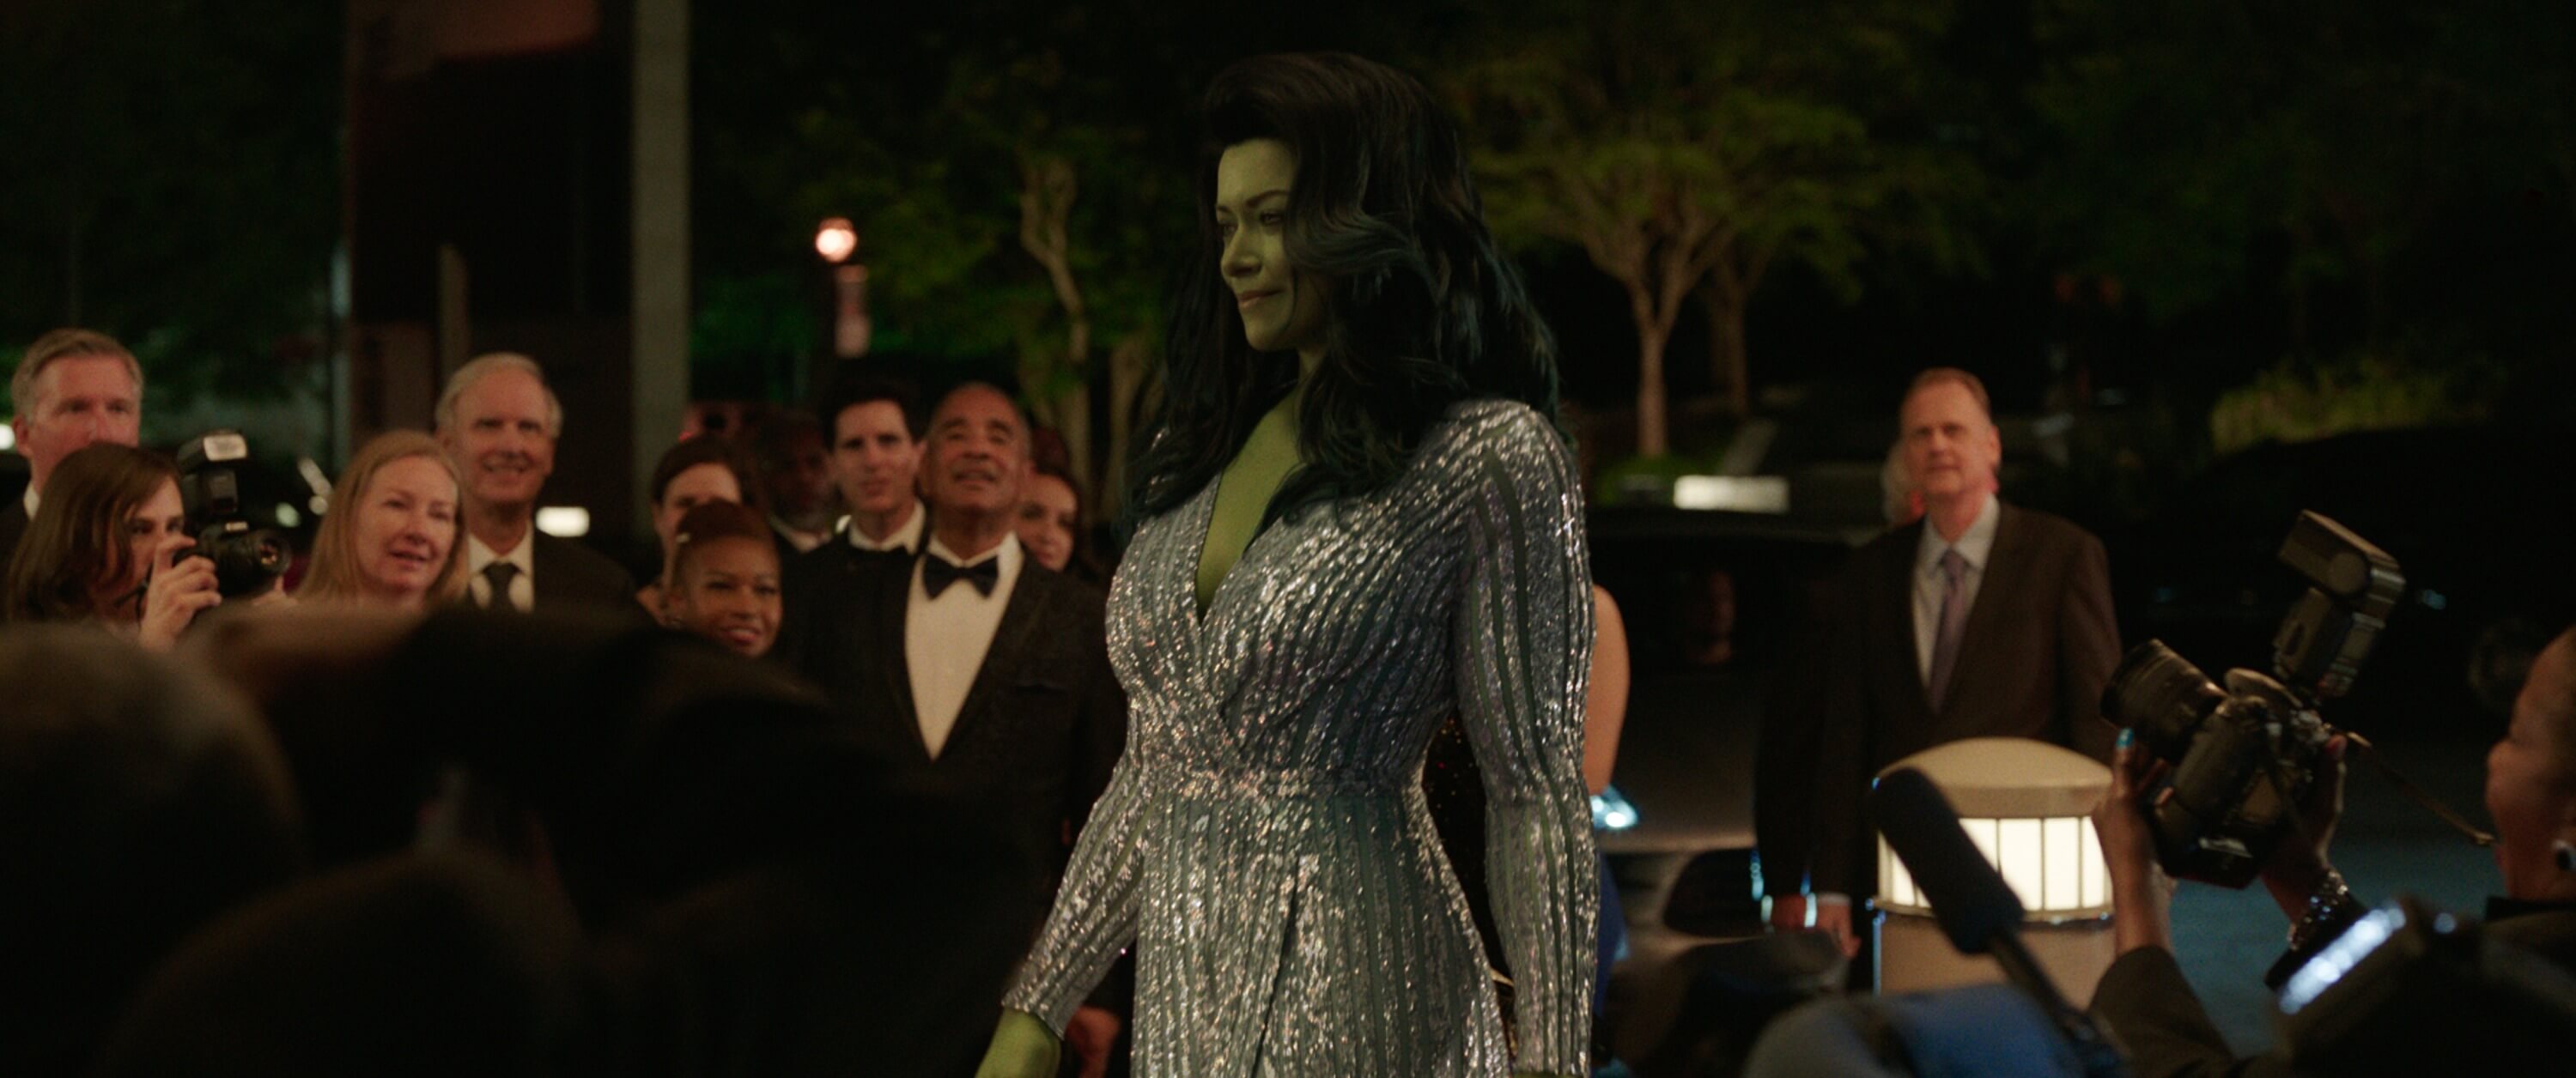 Tatiana Maslany as She-Hulk in silver dress